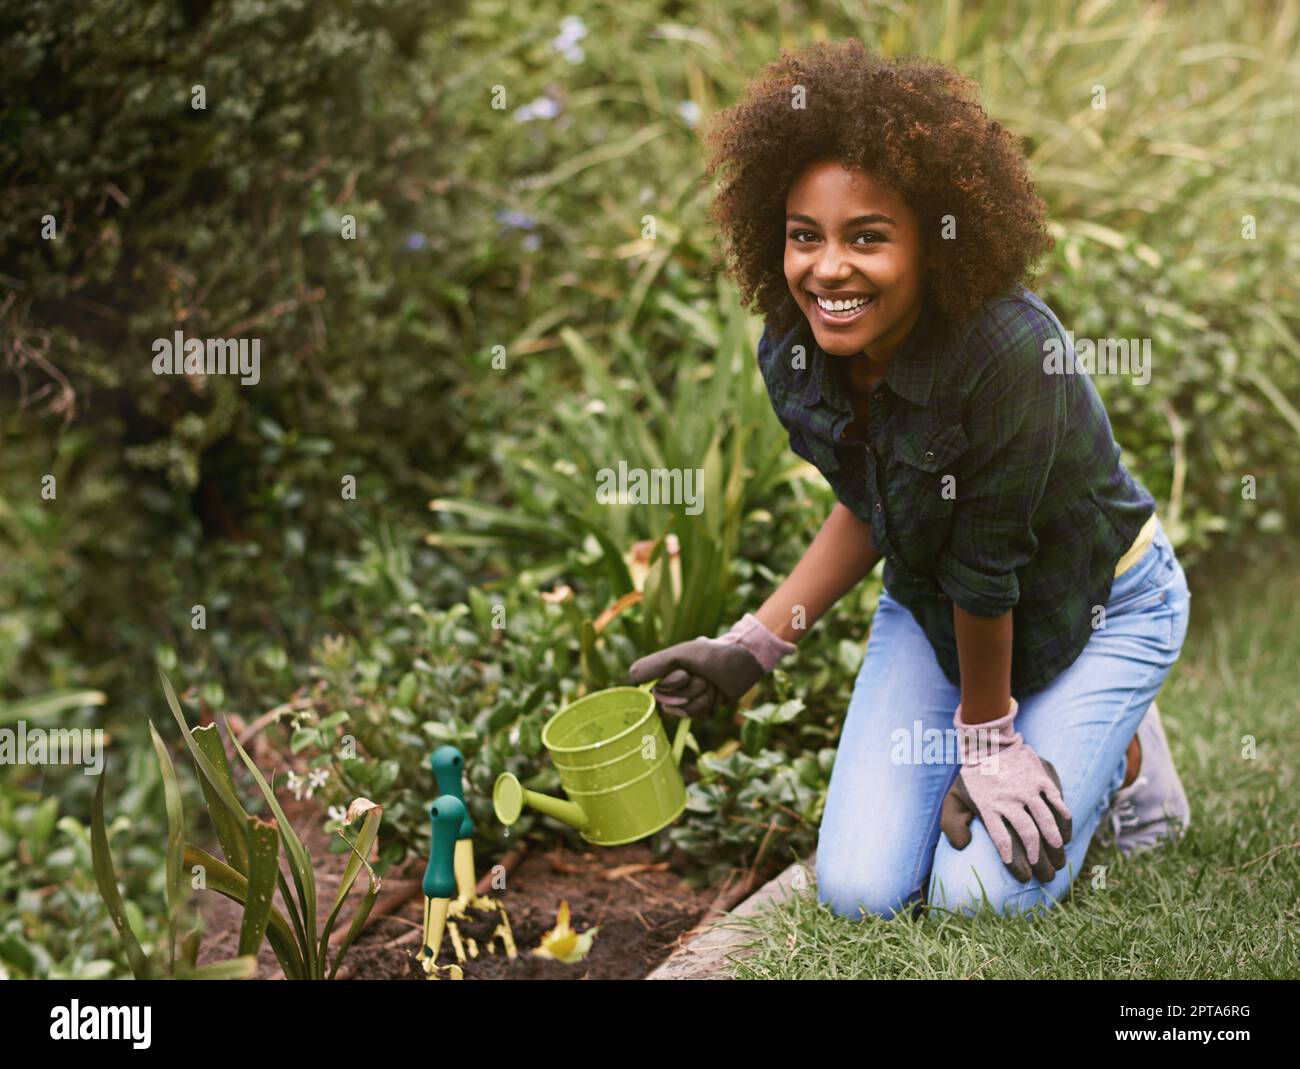 Maintenant, attendre et voir comment ils grandissent. Une jeune femme arroser des plantes dans son jardin Banque D'Images